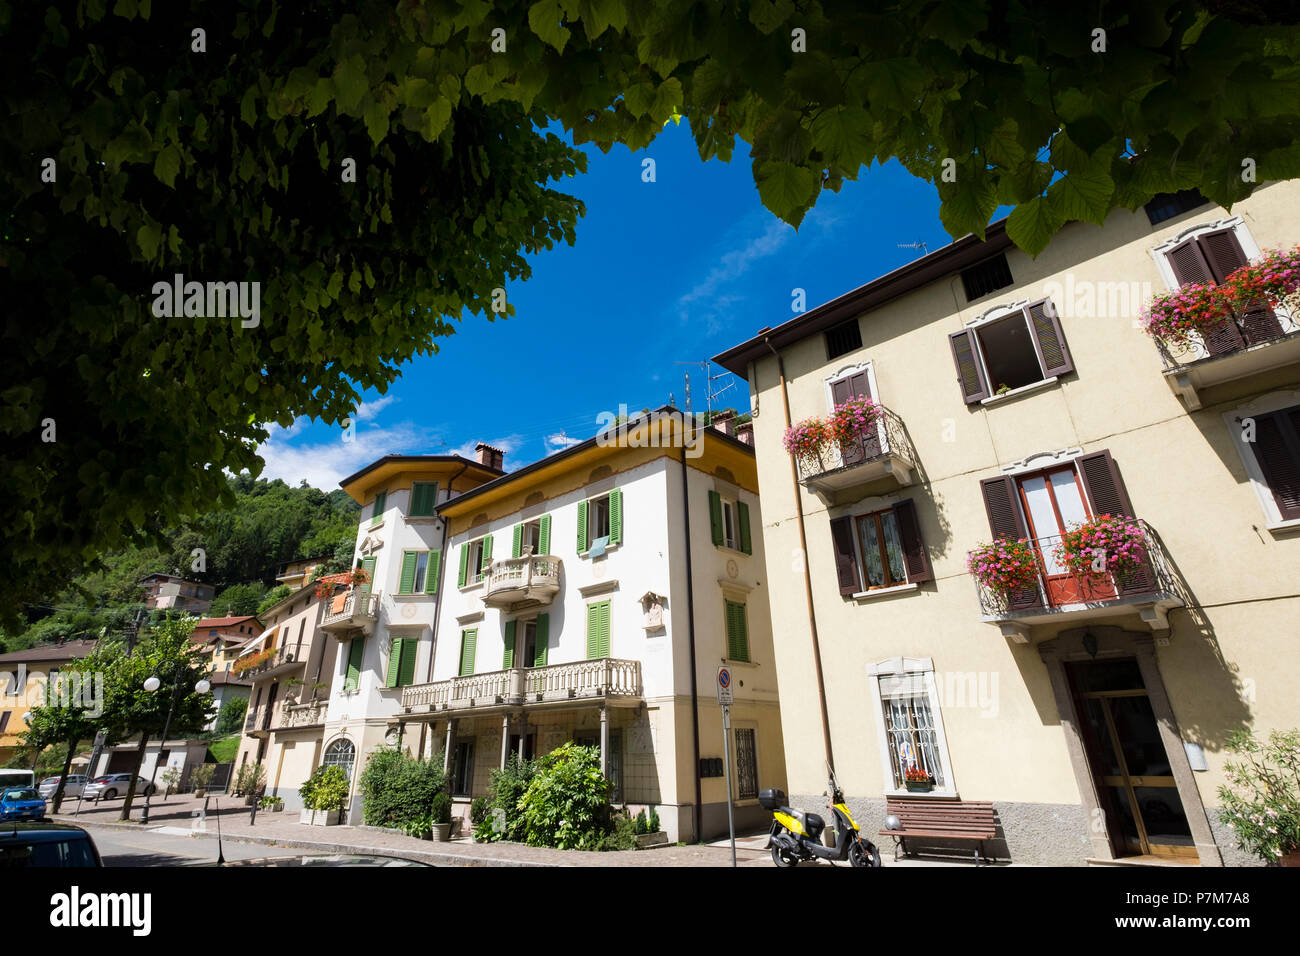 San Pellegrino avec son architecture art nouveau est l'une des plus importantes destinations touristiques de la vallée Brembana au nord de la province de Bergame en Italie Banque D'Images